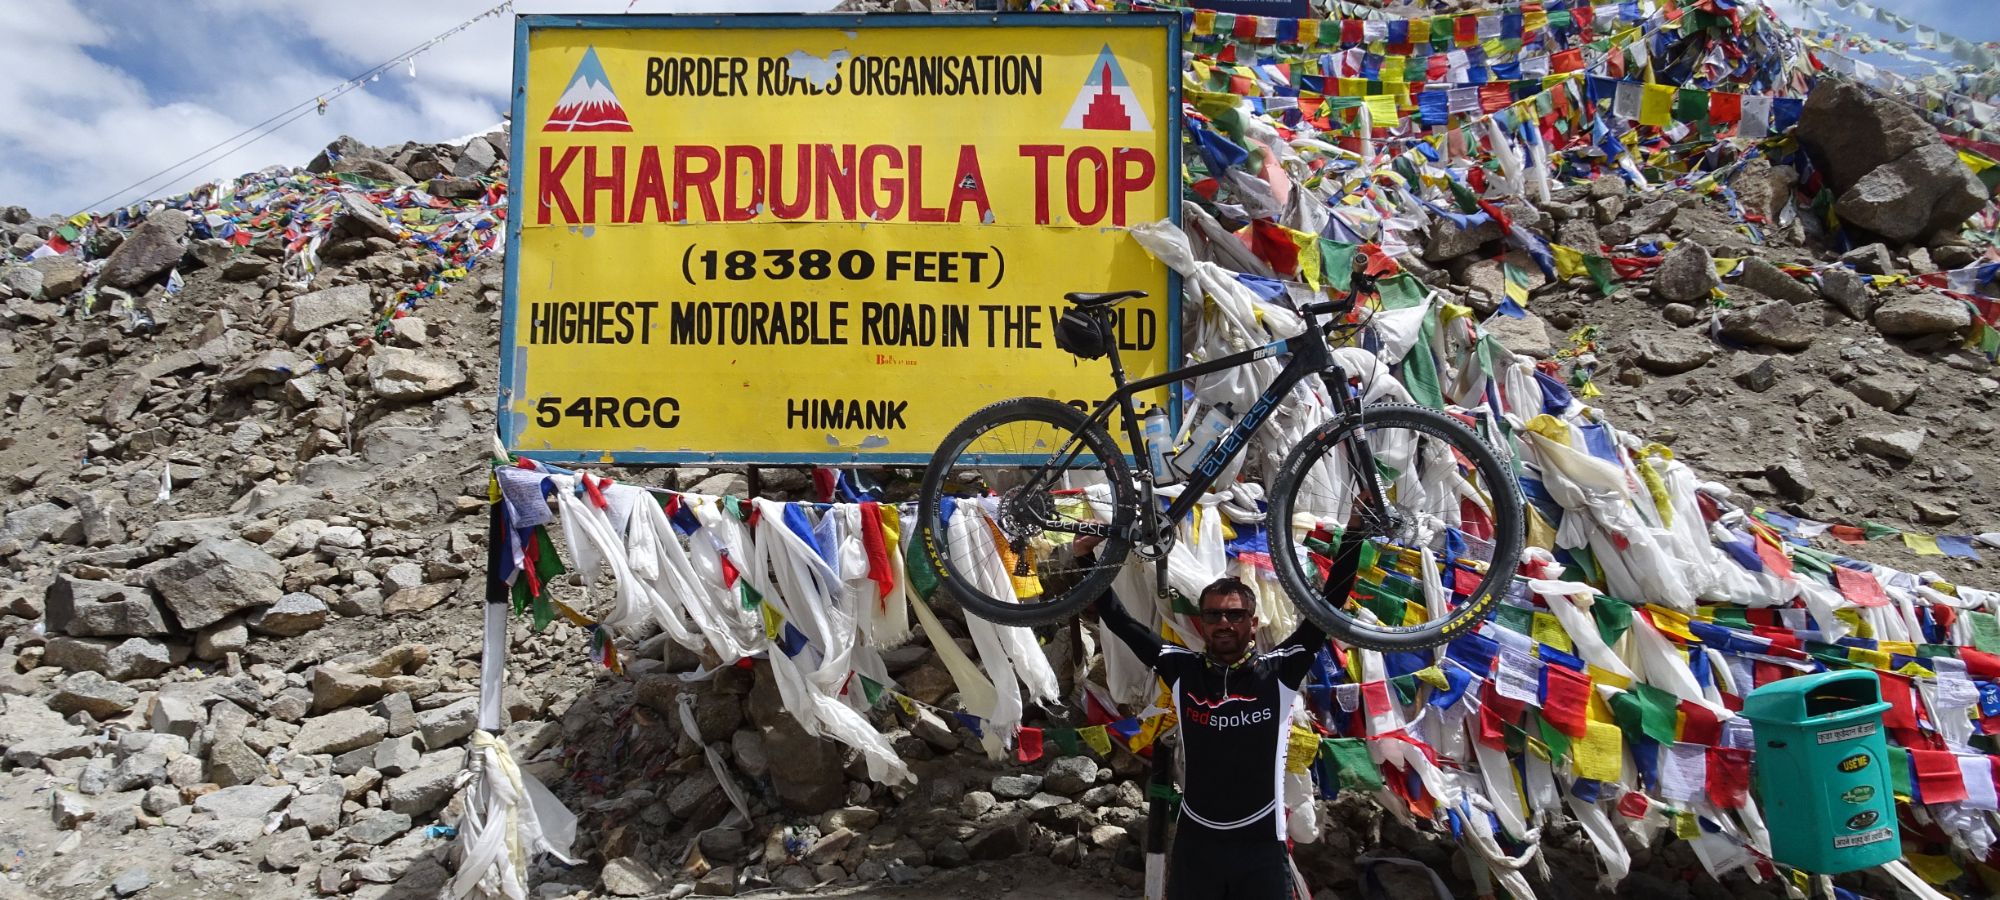 Cycling Holidays India Himalaya